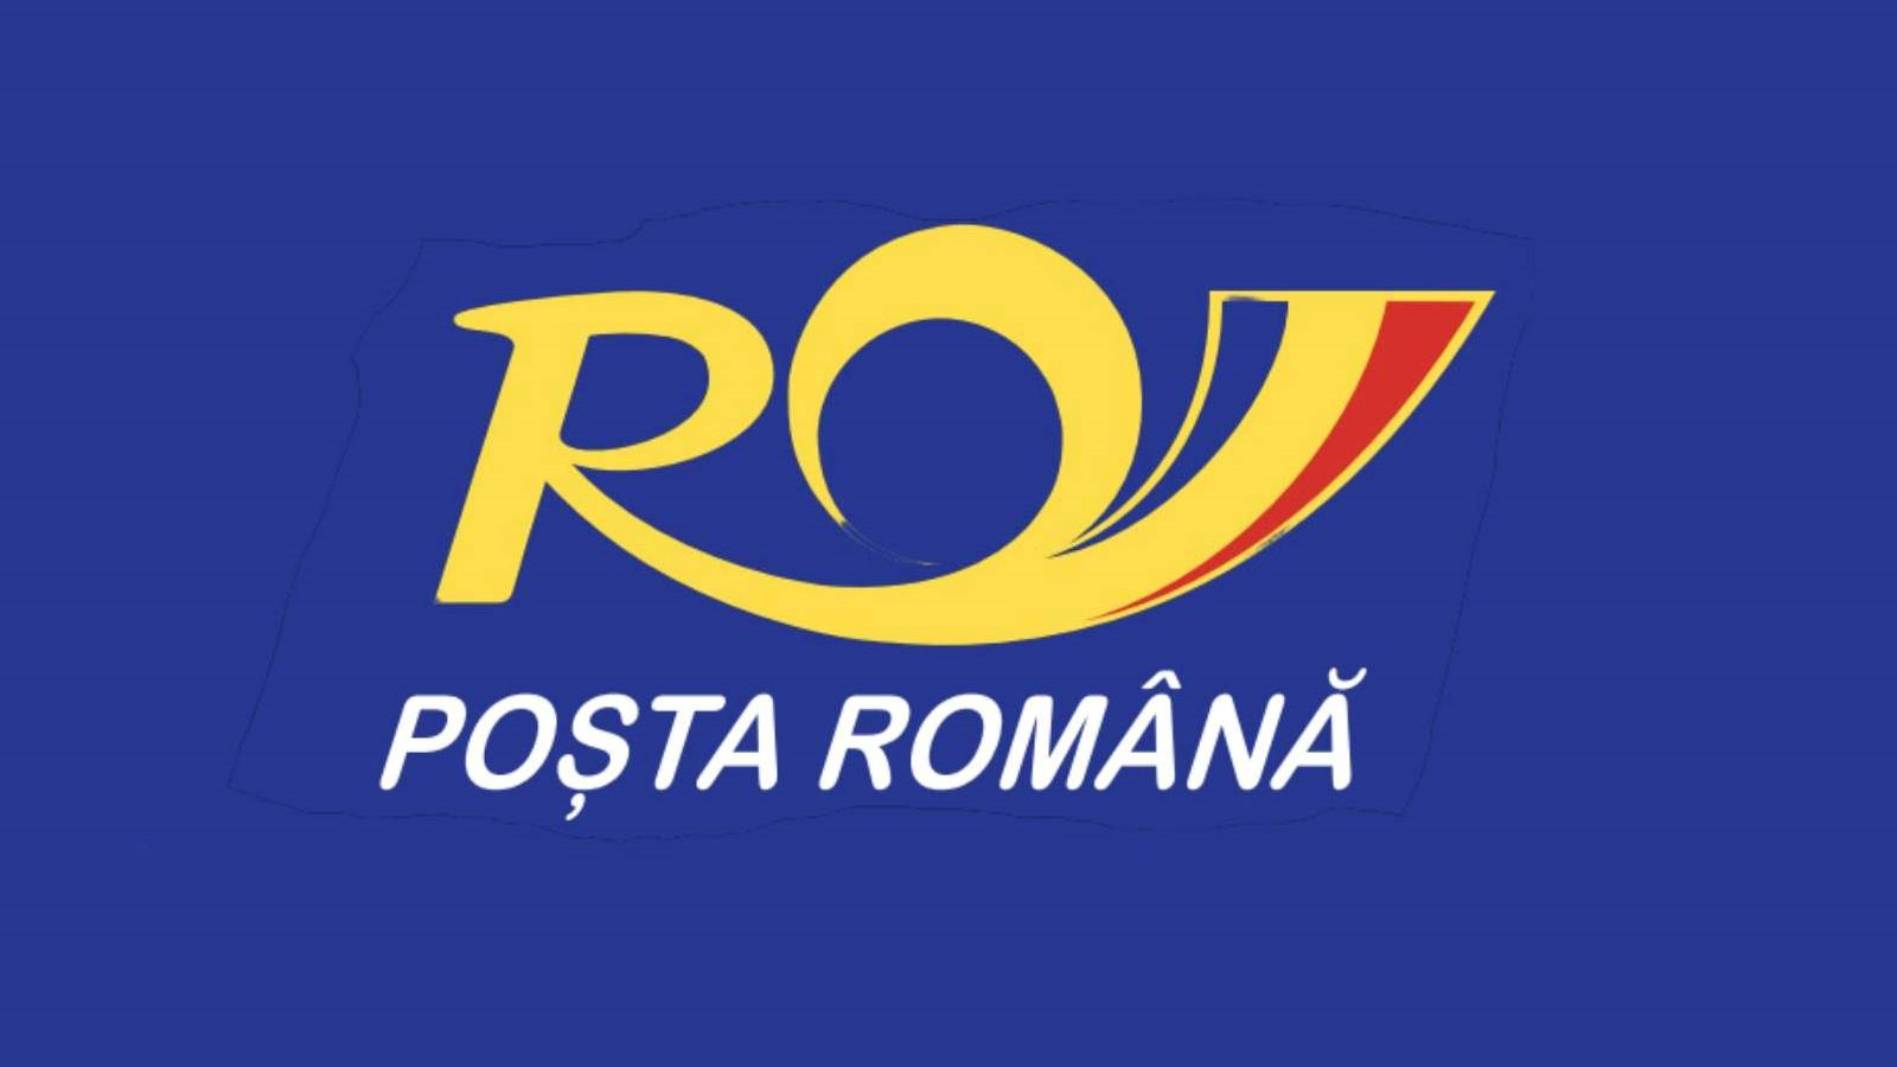 Rozwiązanie dotyczące poczty rumuńskiej zostało oficjalnie ogłoszone MILIIONOM Rumunów